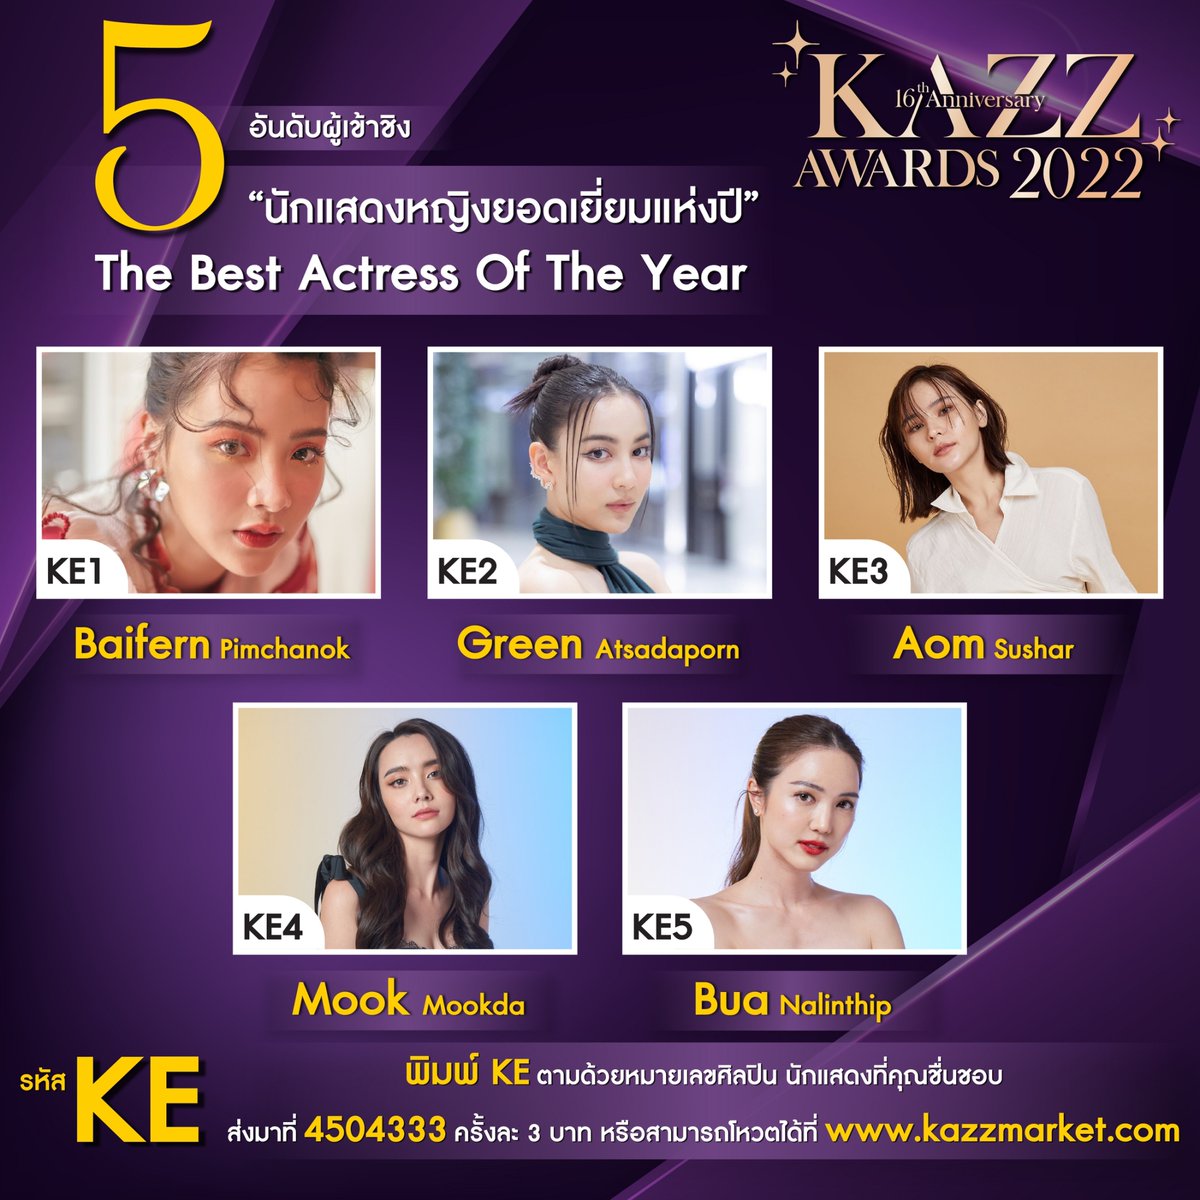 5) KE รางวัลนักแสดงหญิงยอดเยี่ยมแห่งปี The Best Actress Of The Year

KE1 ใบเฟิร์น พิมพ์ชนก 
KE2 กรีน อัษฎาพร 
KE3 ออม สุชาร์ 
KE4 มุก มุกดา 
KE5 บัว นลินทิพย์ 

#KAZZMAGAZINE #KAZZAWARDS2022